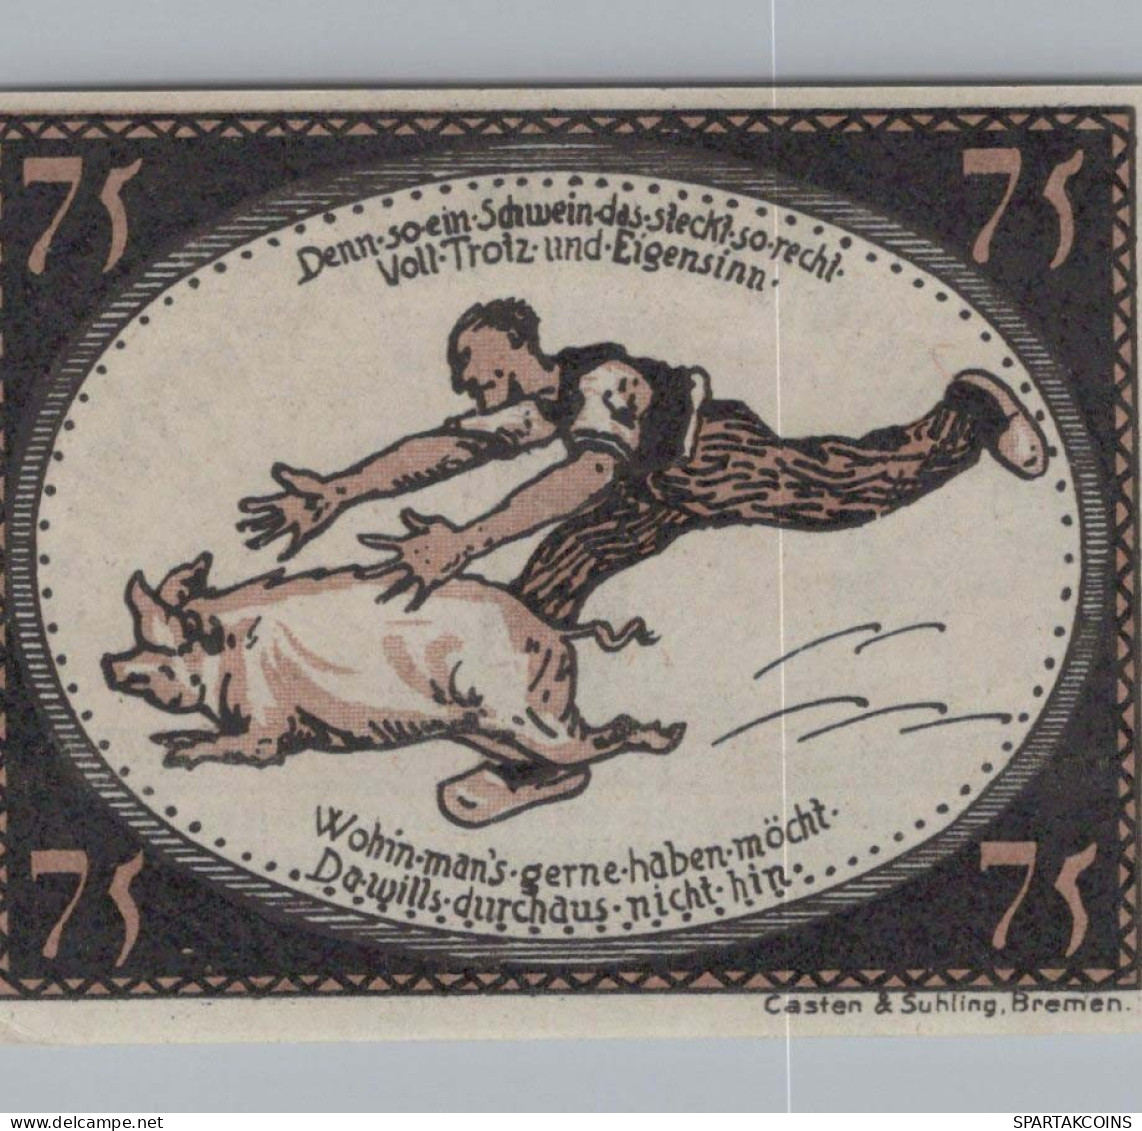 75 PFENNIG 1921 Stadt DIEPHOLZ Hanover UNC DEUTSCHLAND Notgeld Banknote #PA461 - [11] Emissioni Locali